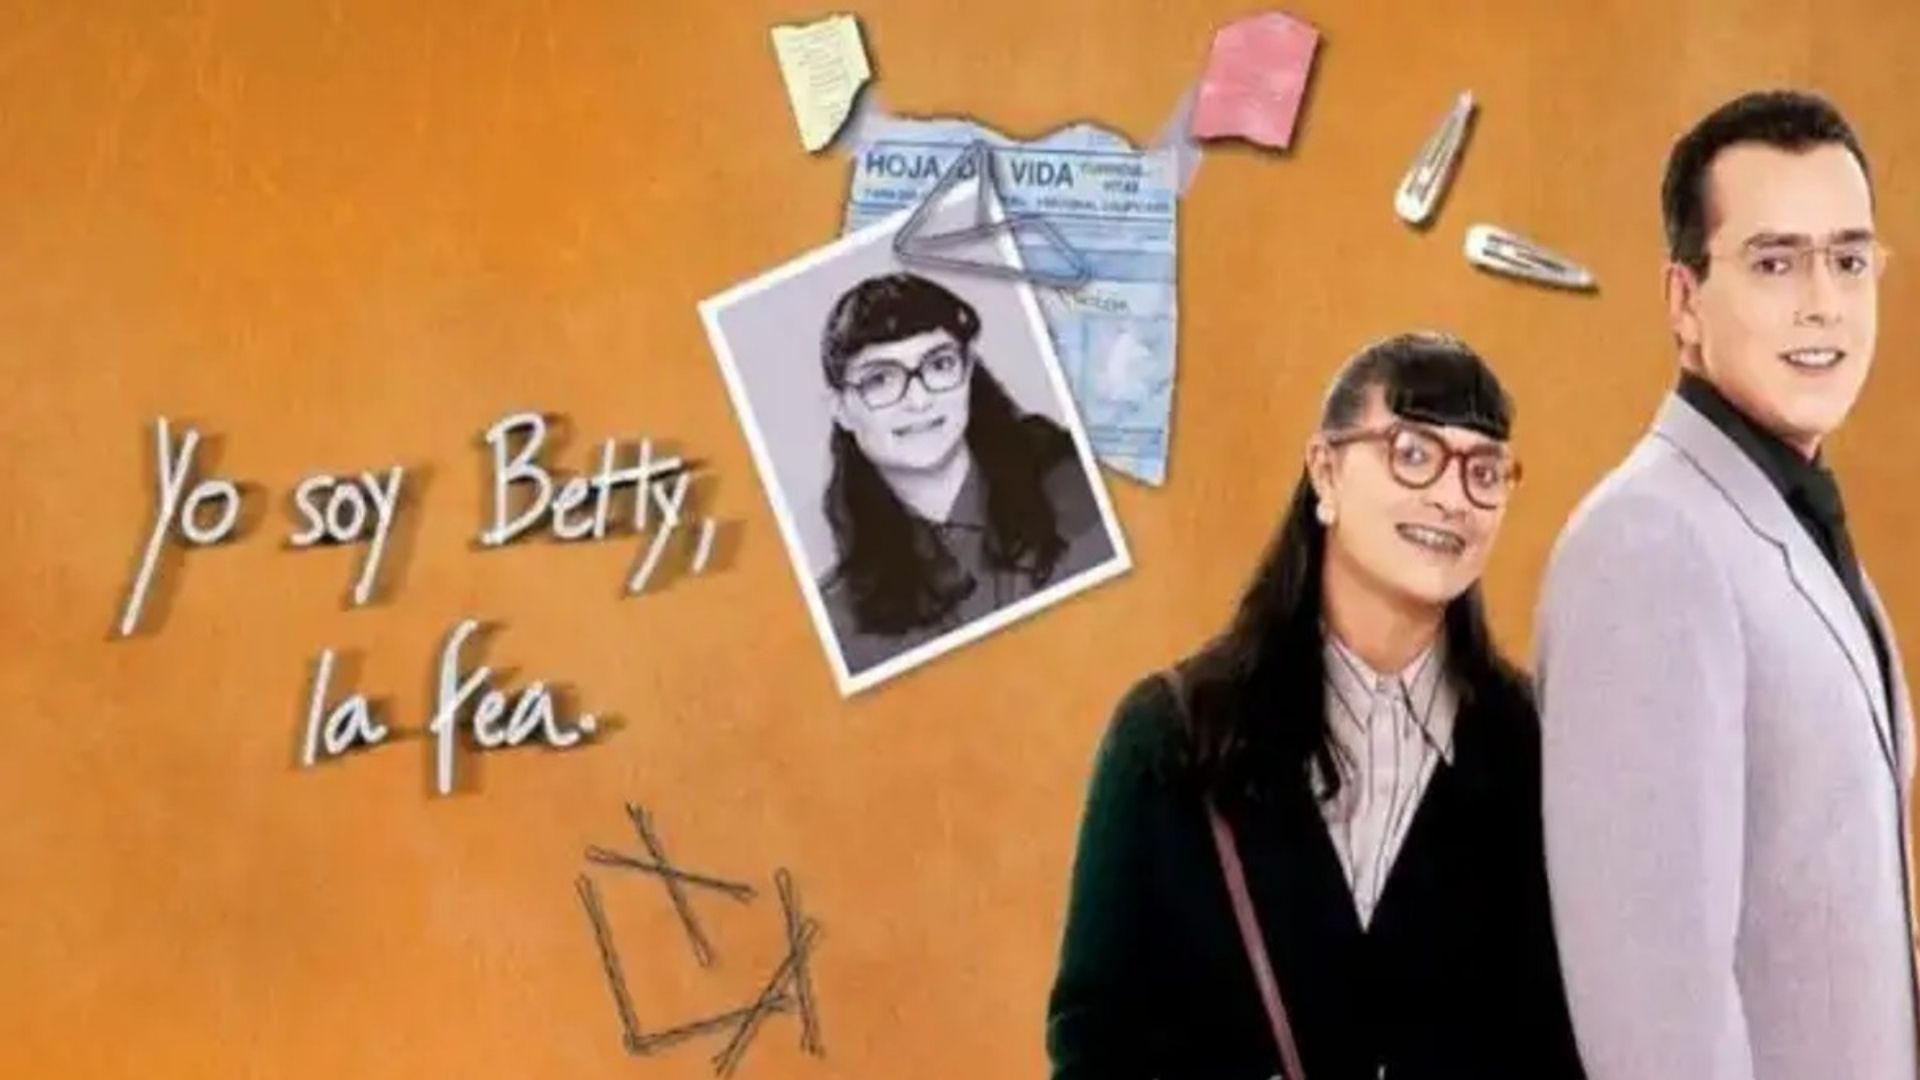 Yo soy Betty, la fea' tendría segunda parte con los mismos protagonistas  pero un inesperado giro en la historia - Infobae